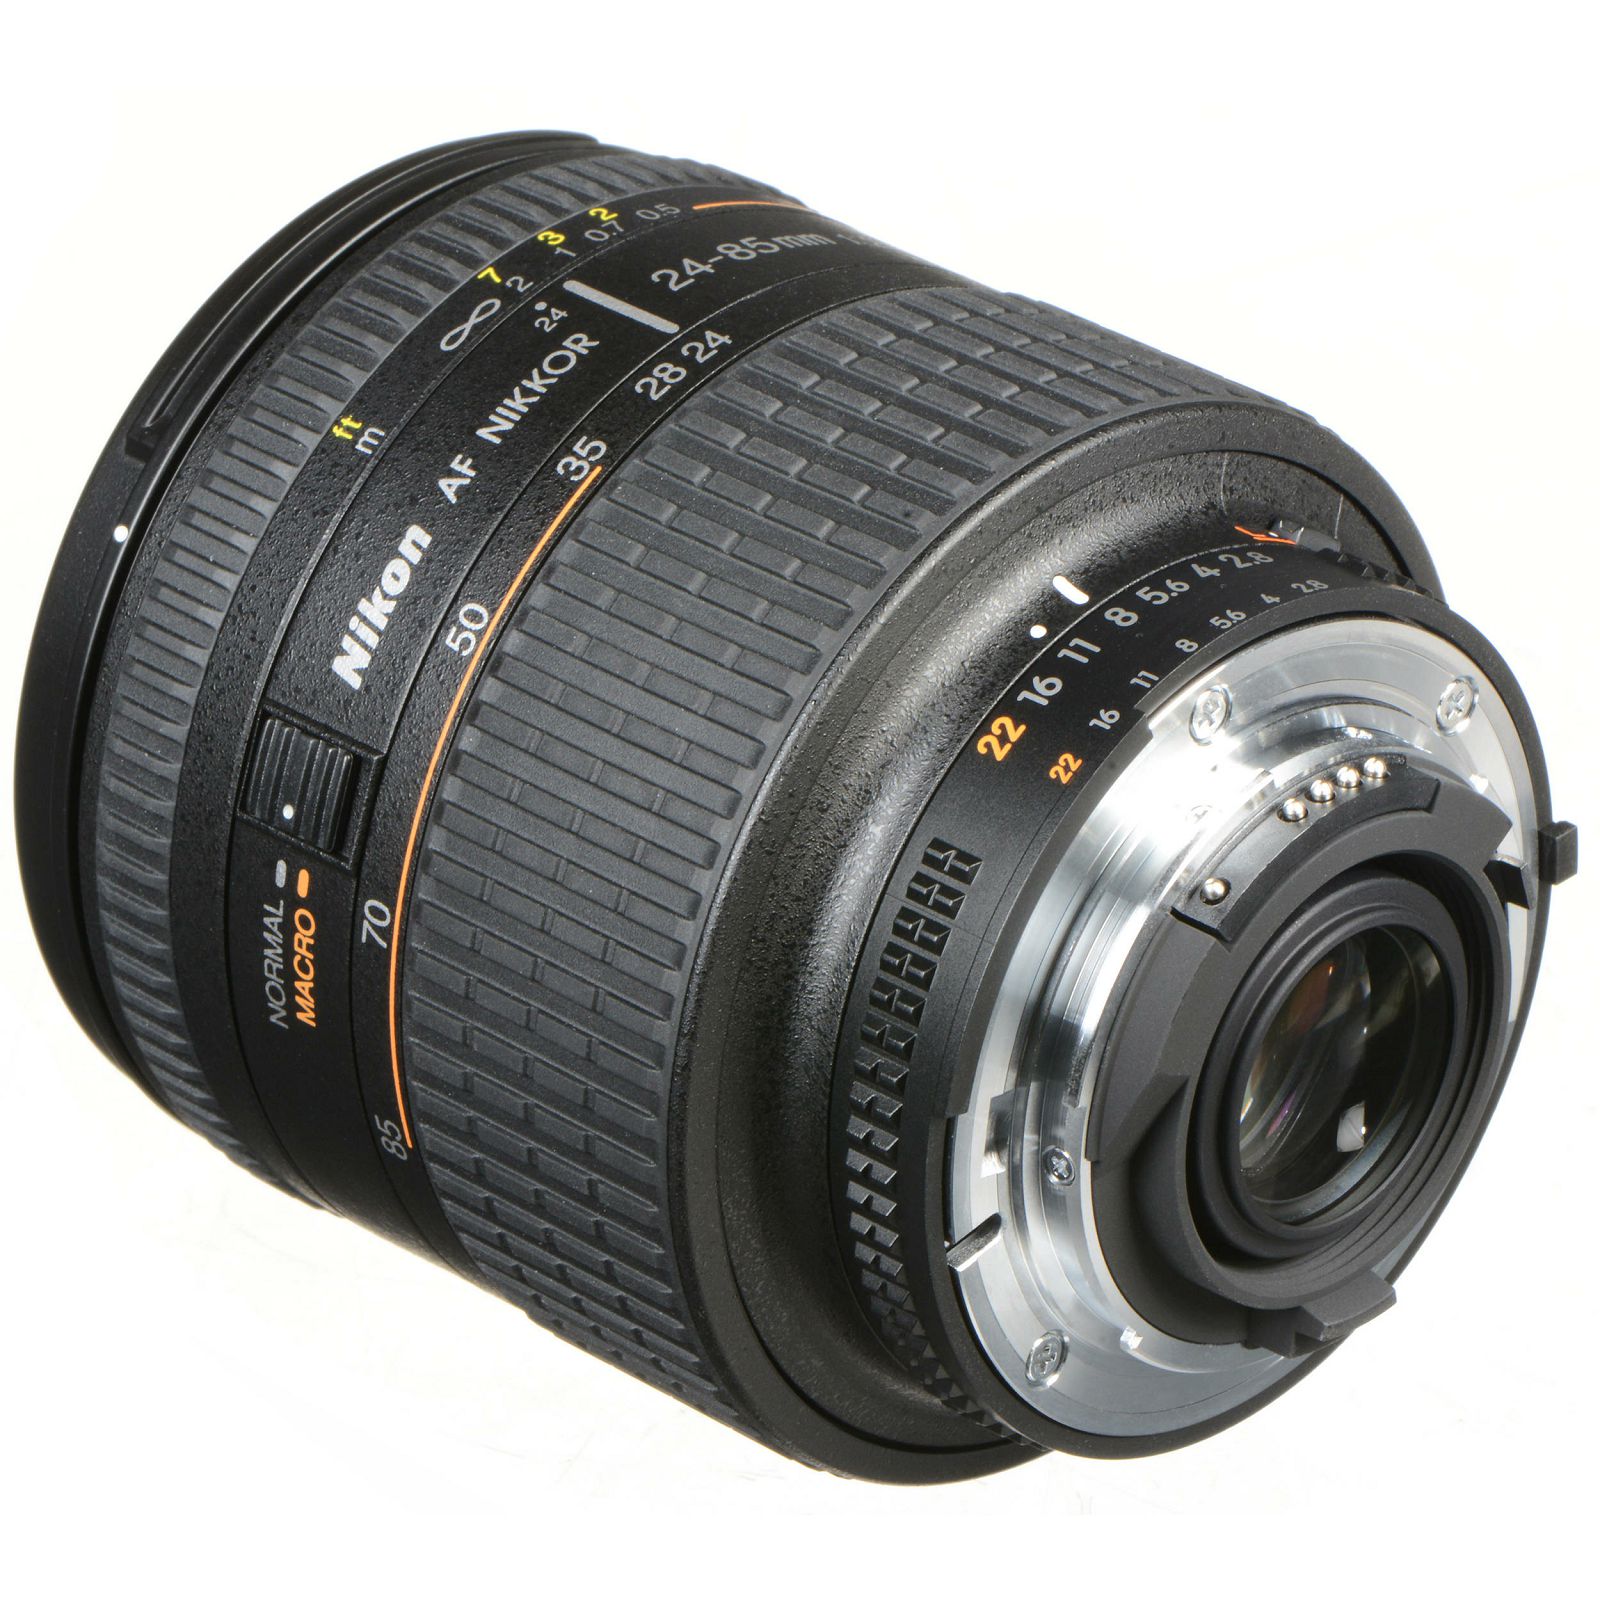 Nikon AF 24-85mm f/2.8-4D FX objektiv Nikkor auto focus zoom lens 24-85 F2.8-4 2.8-4 D (JAA774DA)